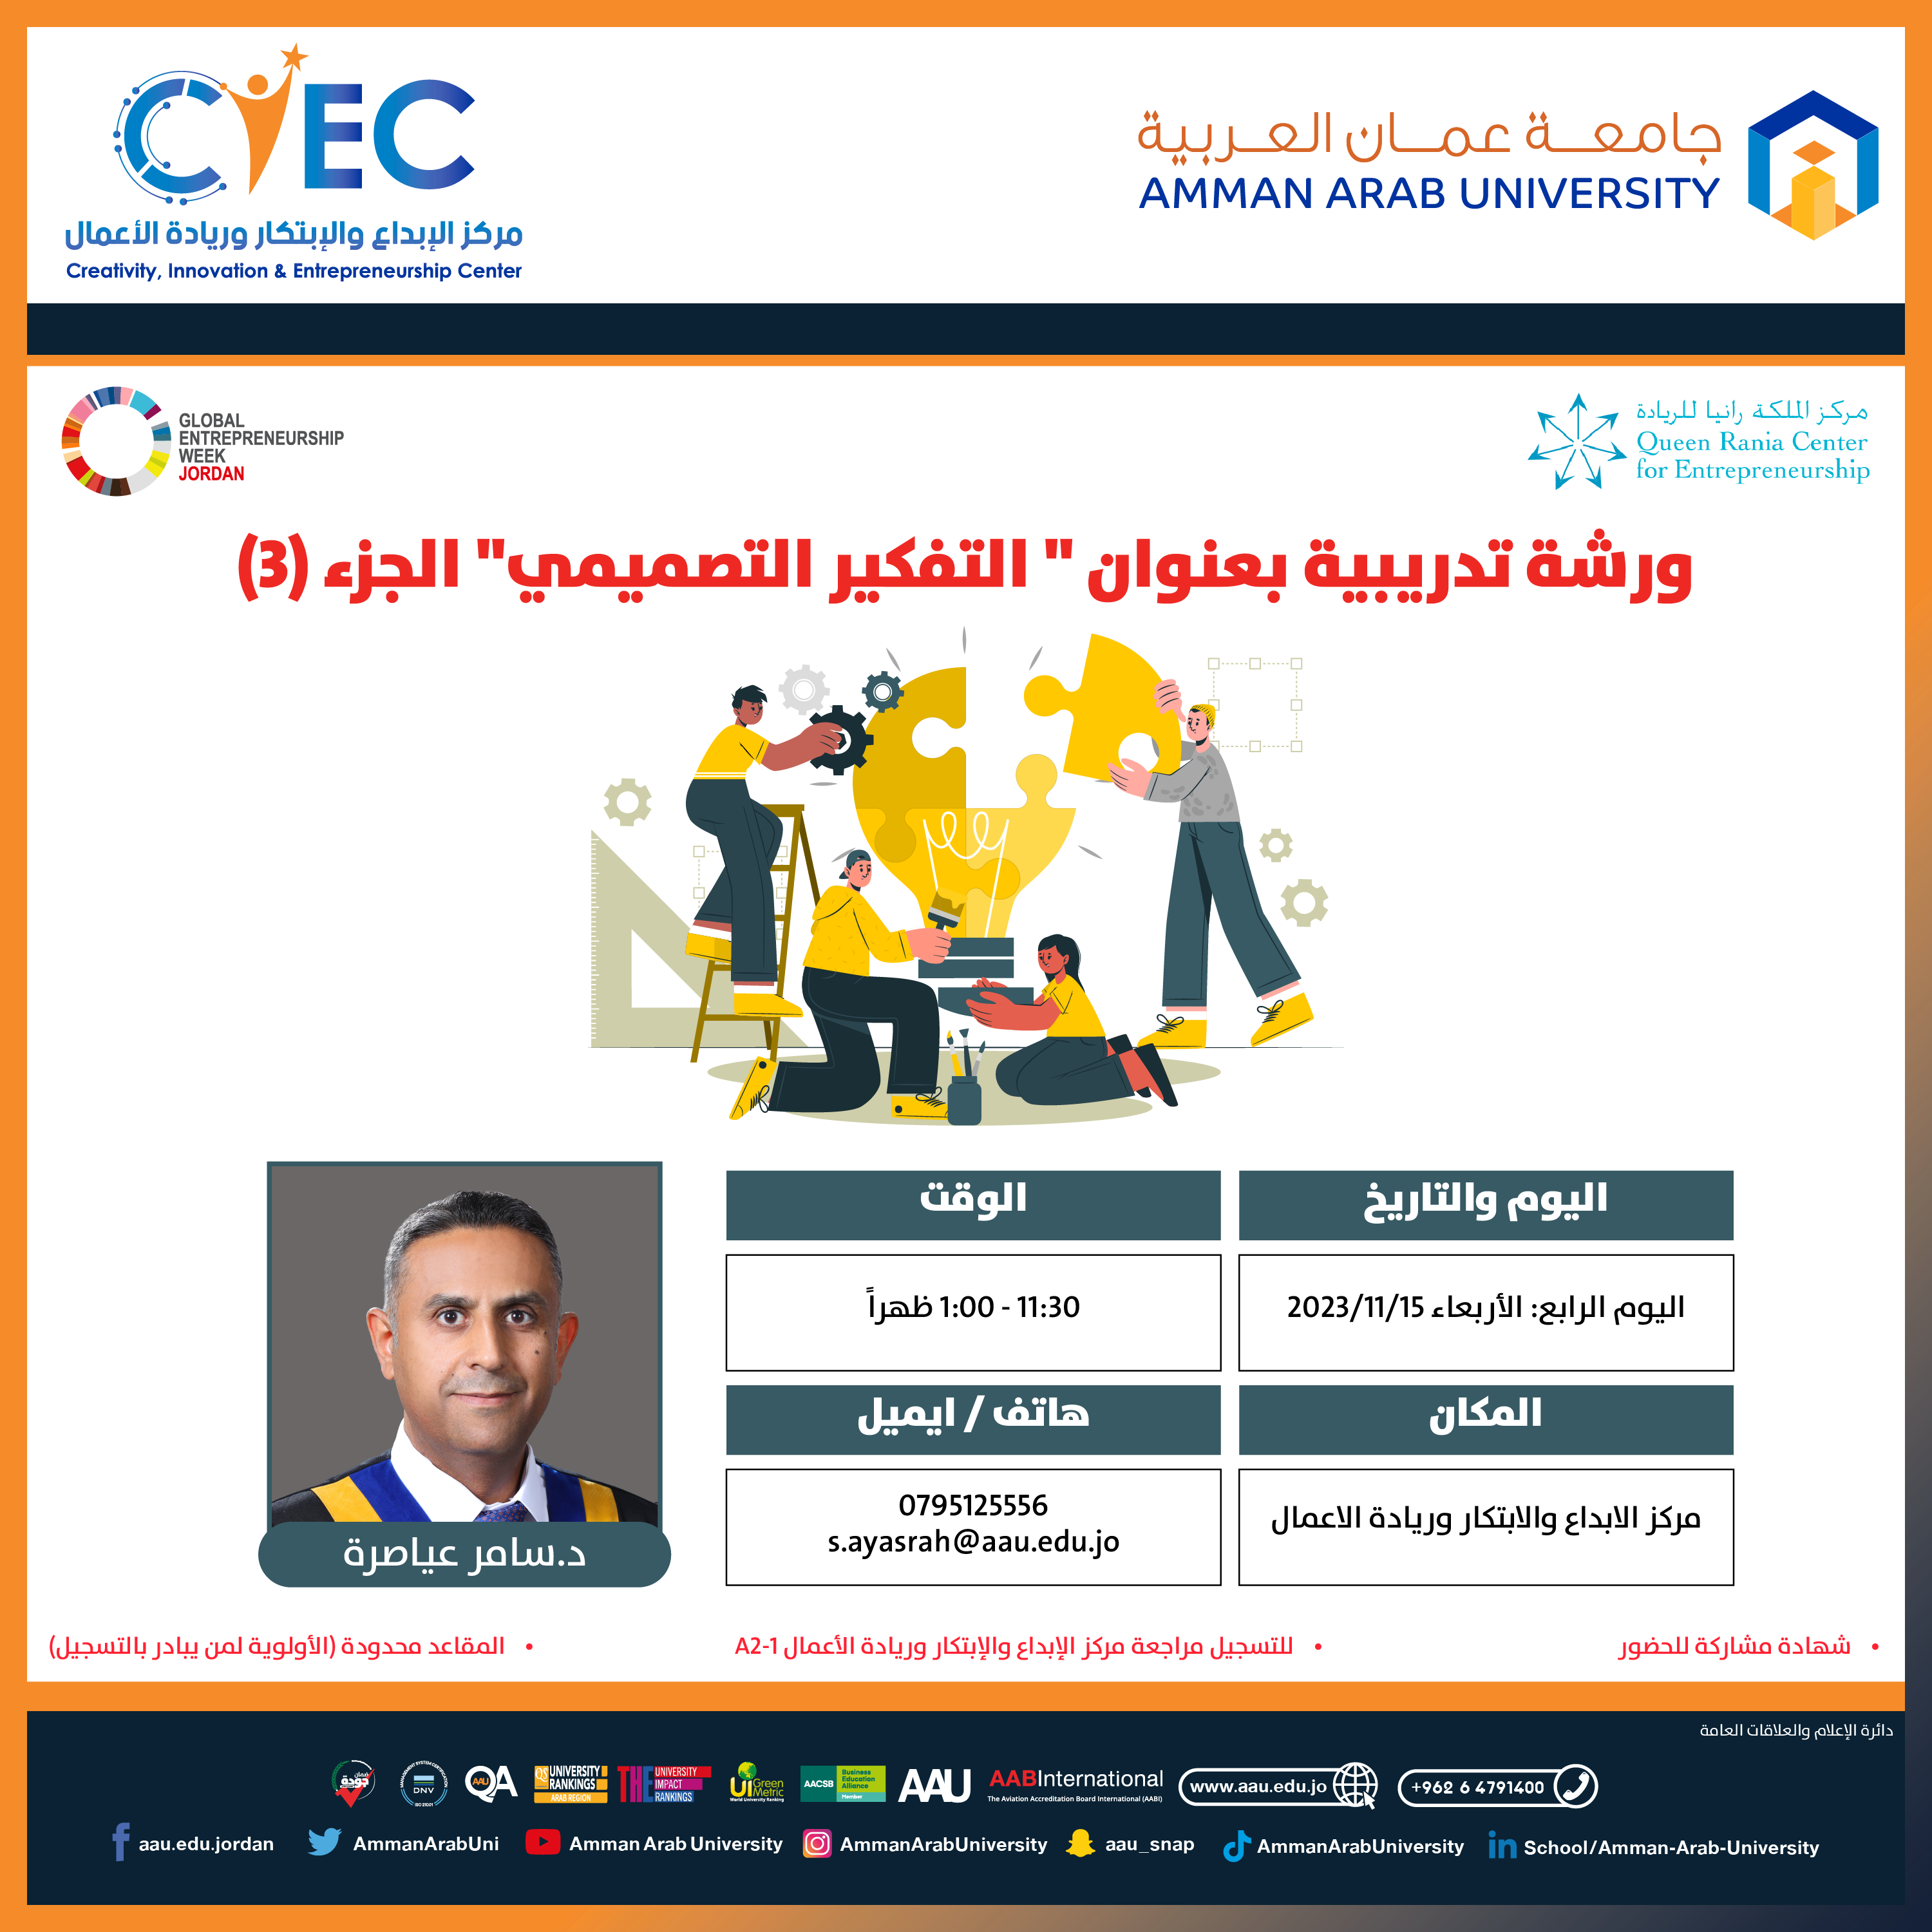 اعلان هام - التعرف على المحاضرات والورش التدريبية للأسبوع العالمي لريادة الأعمال في جامعة عمان العربية8